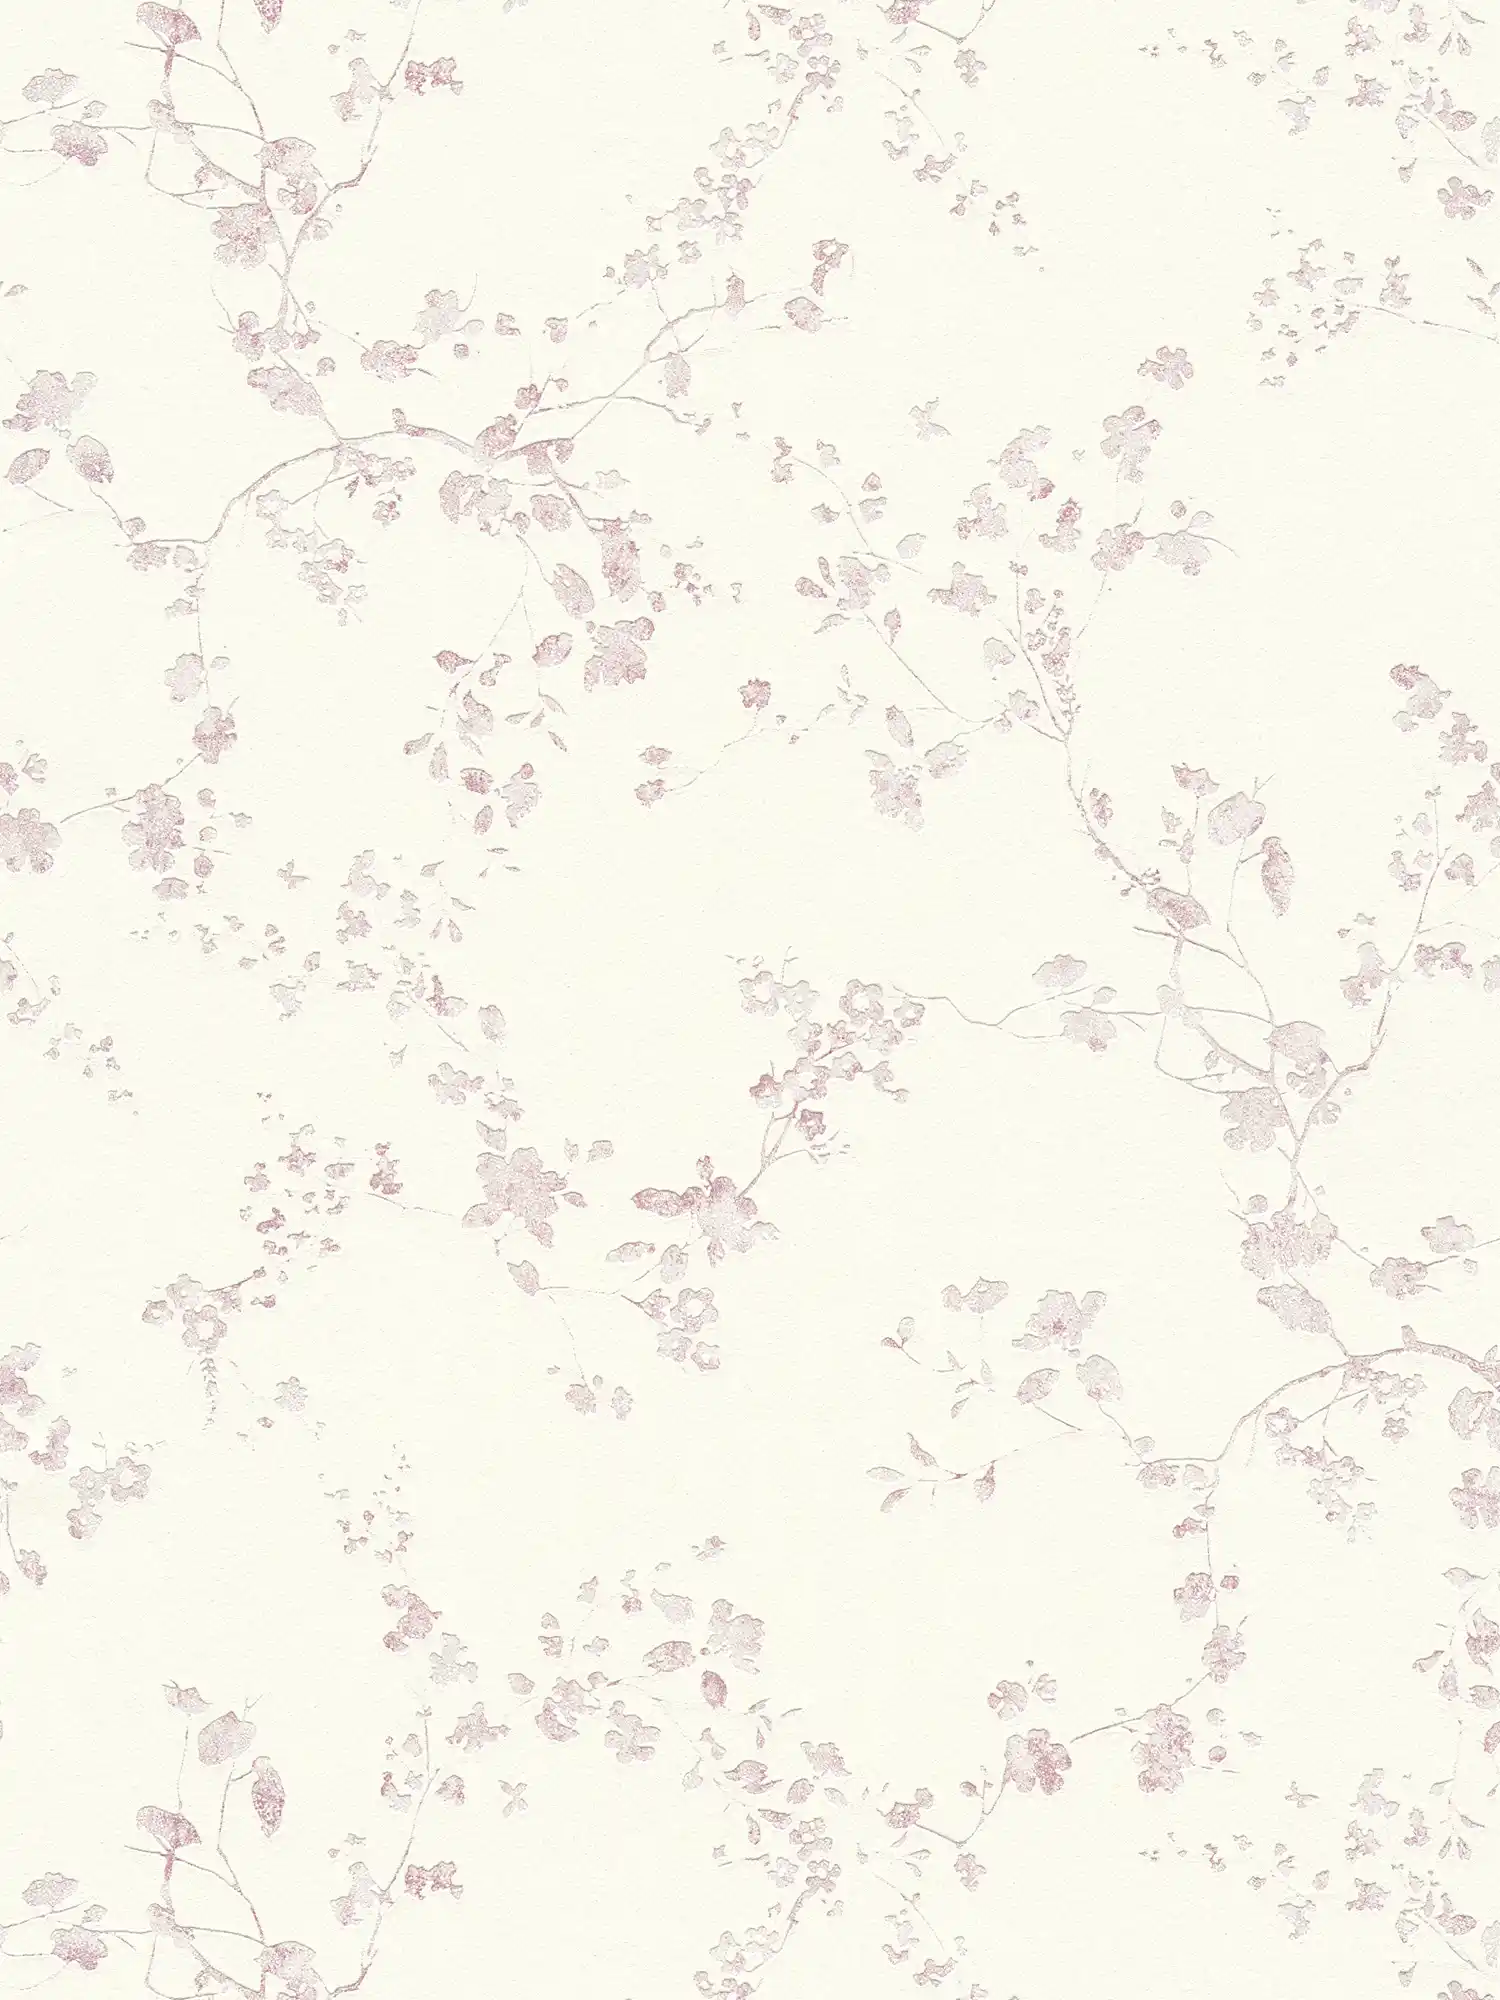         Blumen Vliestapete im Landhausstil – Violett, Creme
    